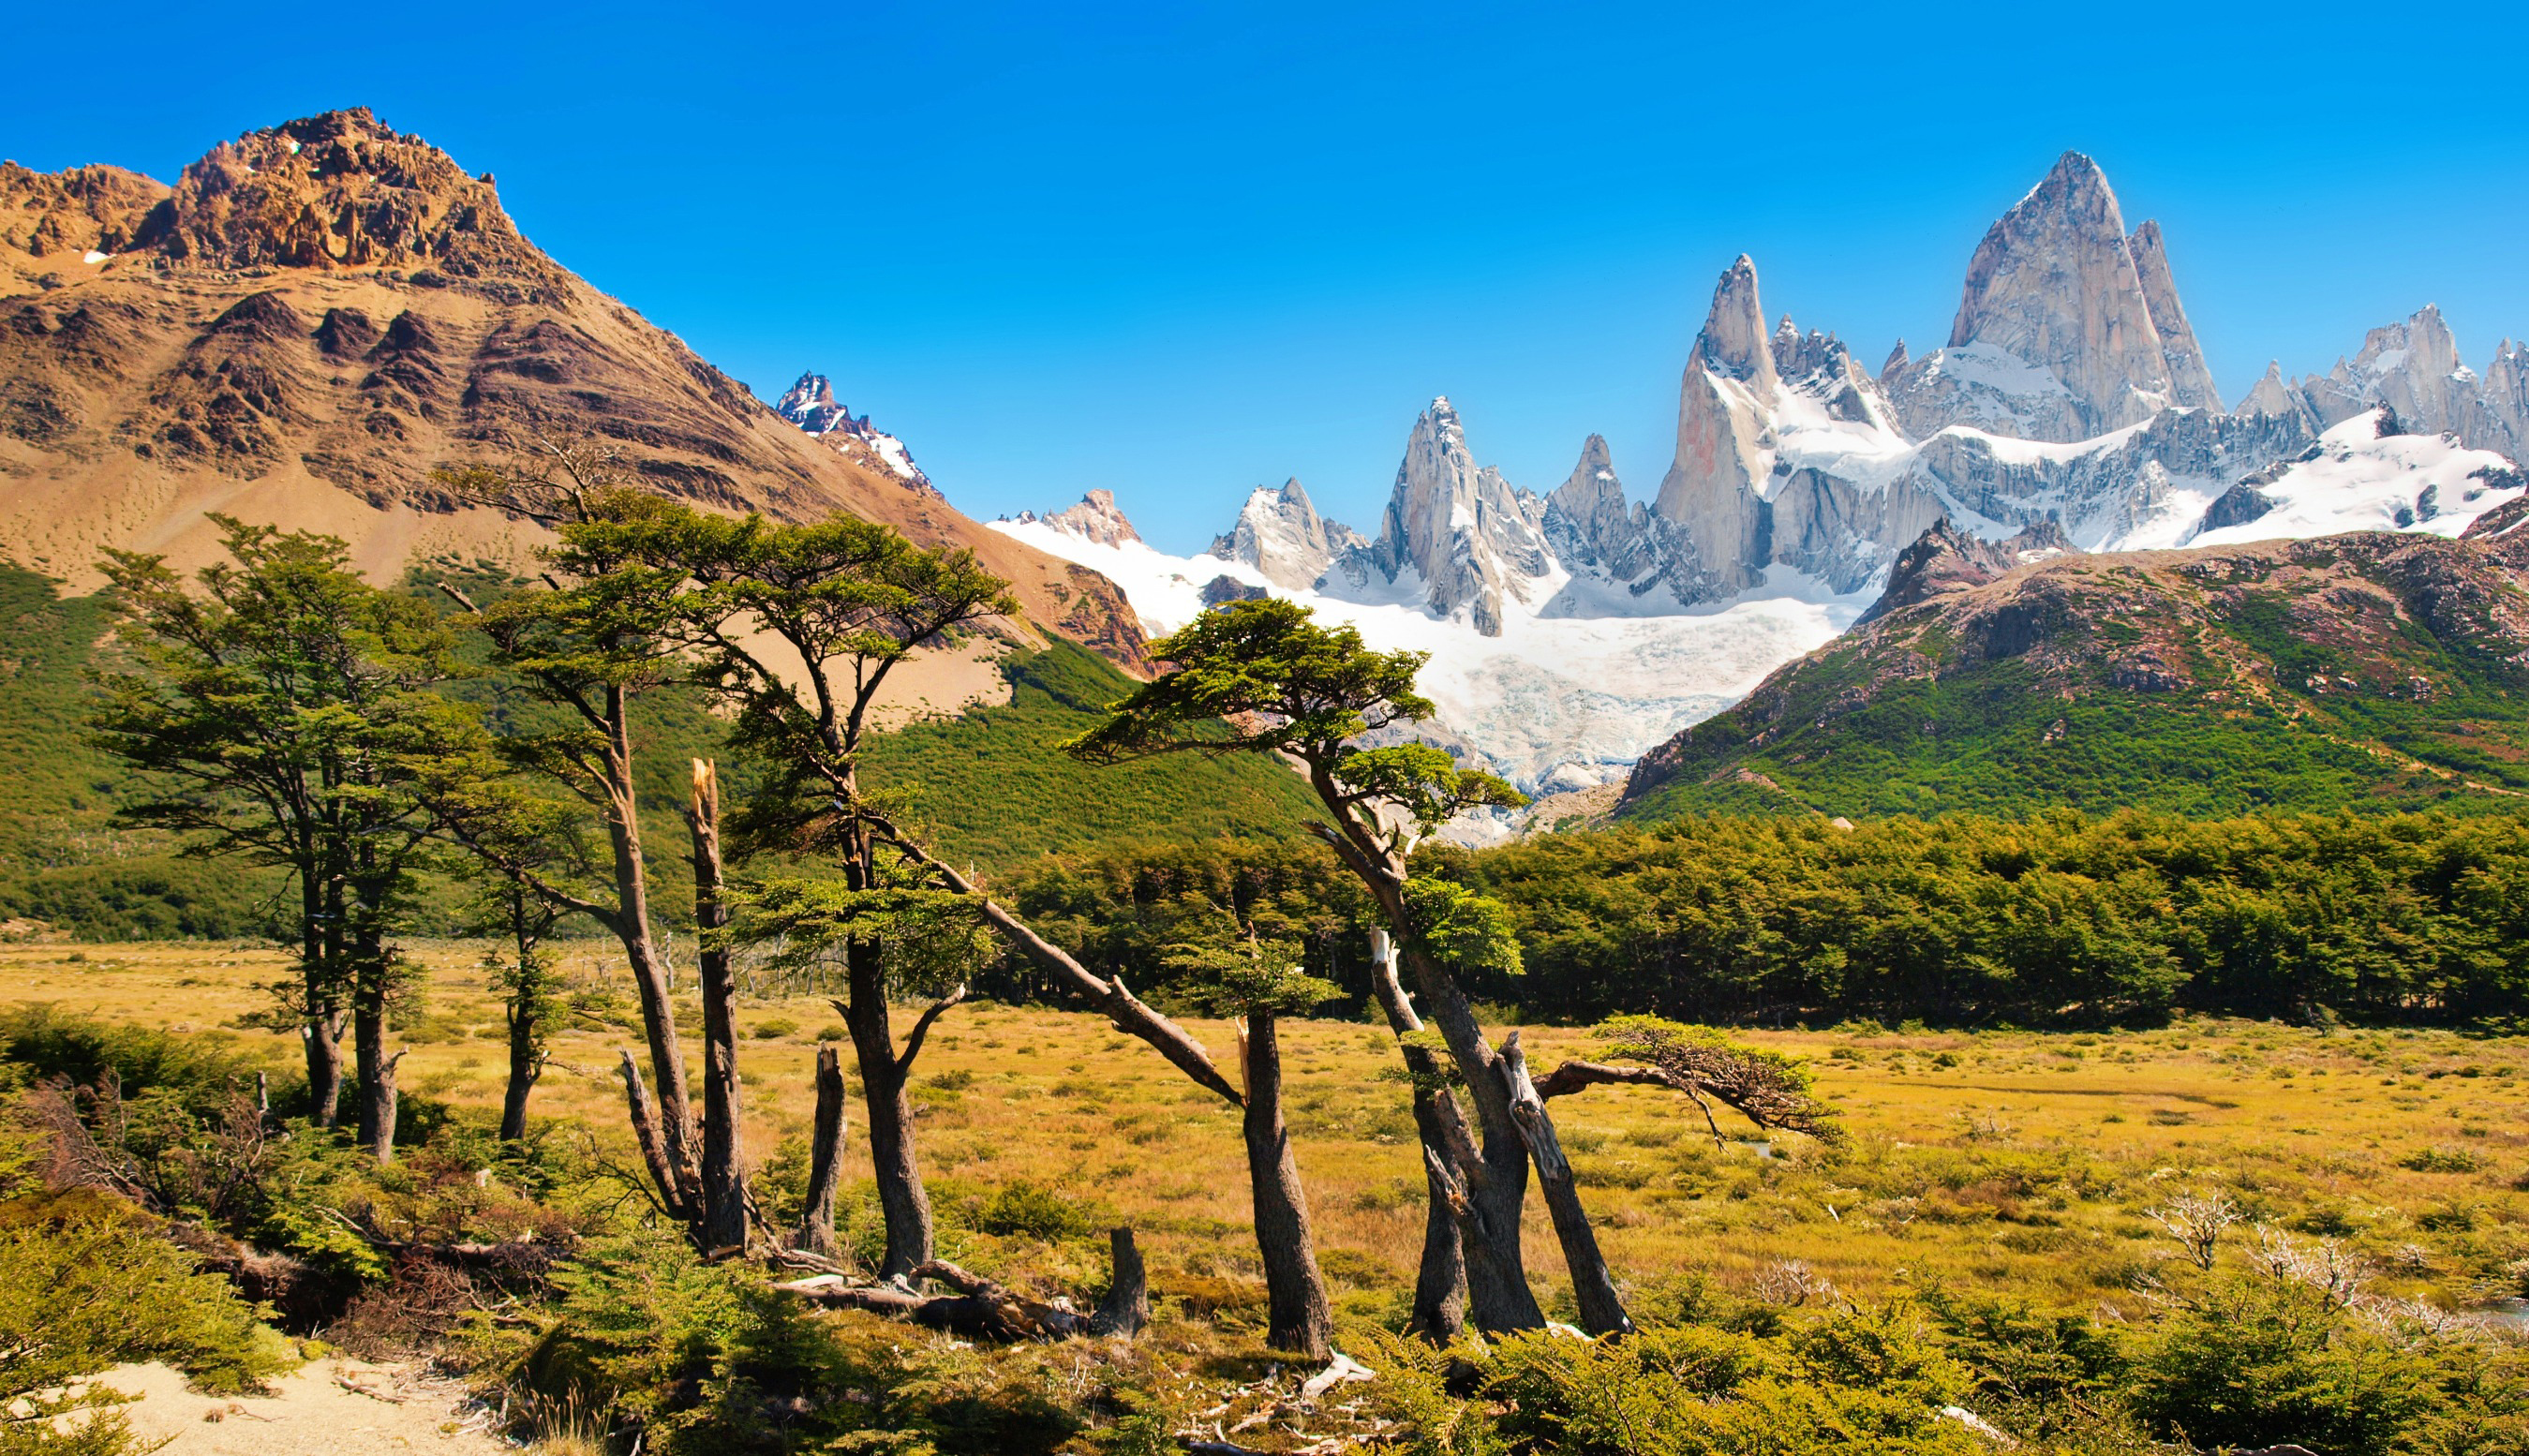 Resa till Argentina - Majestätiska bergstoppar i Fitz Roy, Patagonien, med frodig grönska och klart blå himmel.